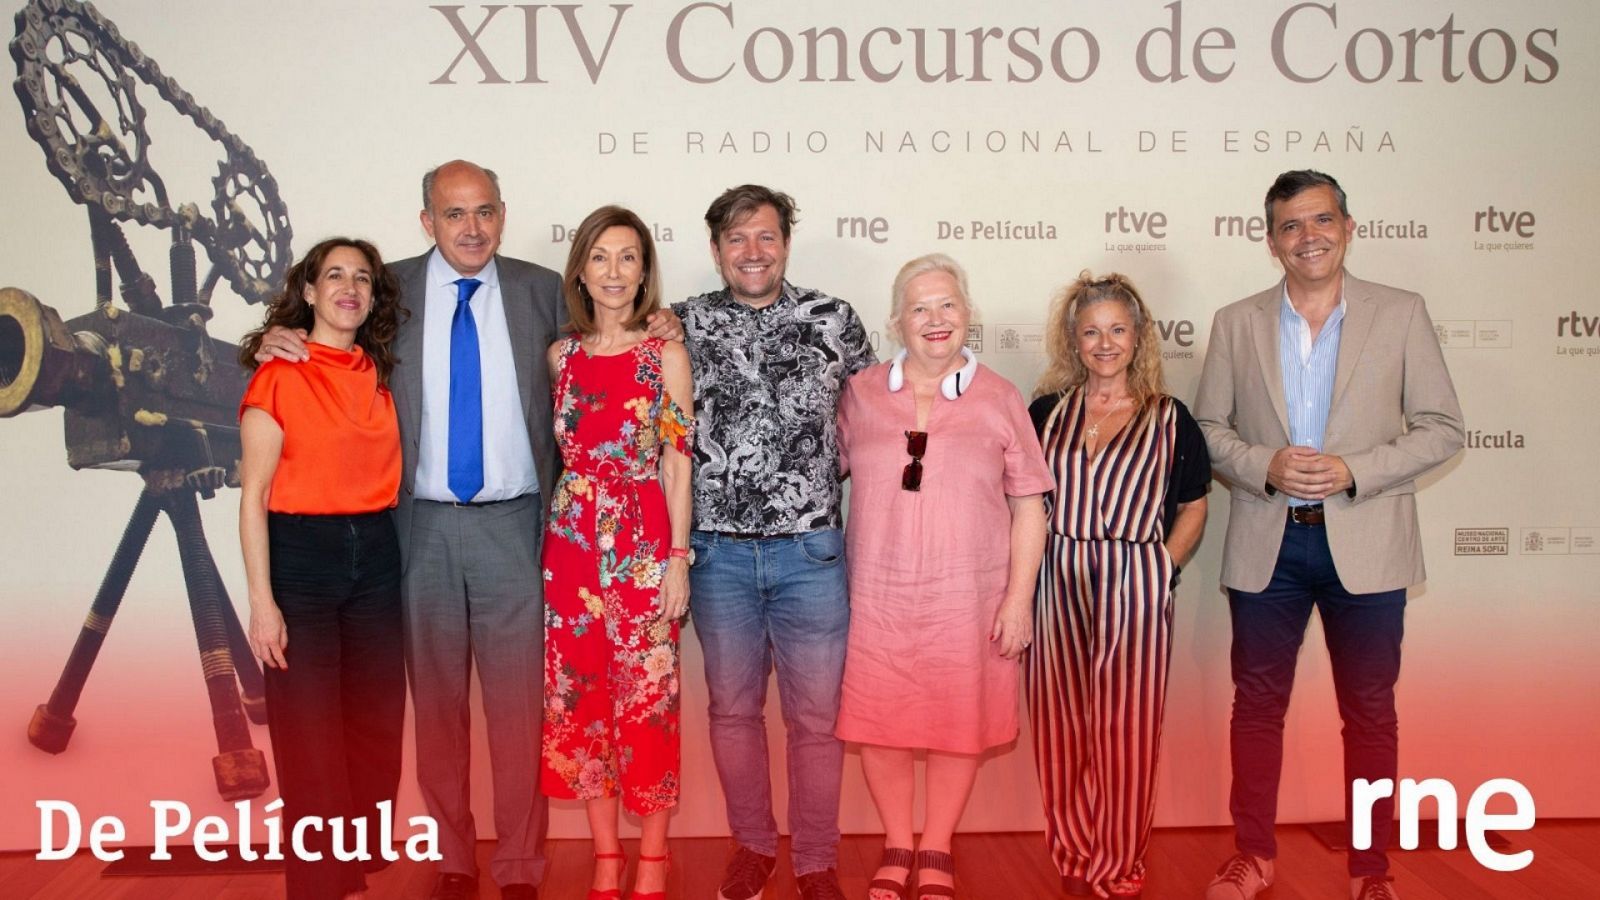 Especial 'XIV Concurso de Cortos RNE' en 'De Pel�cula'